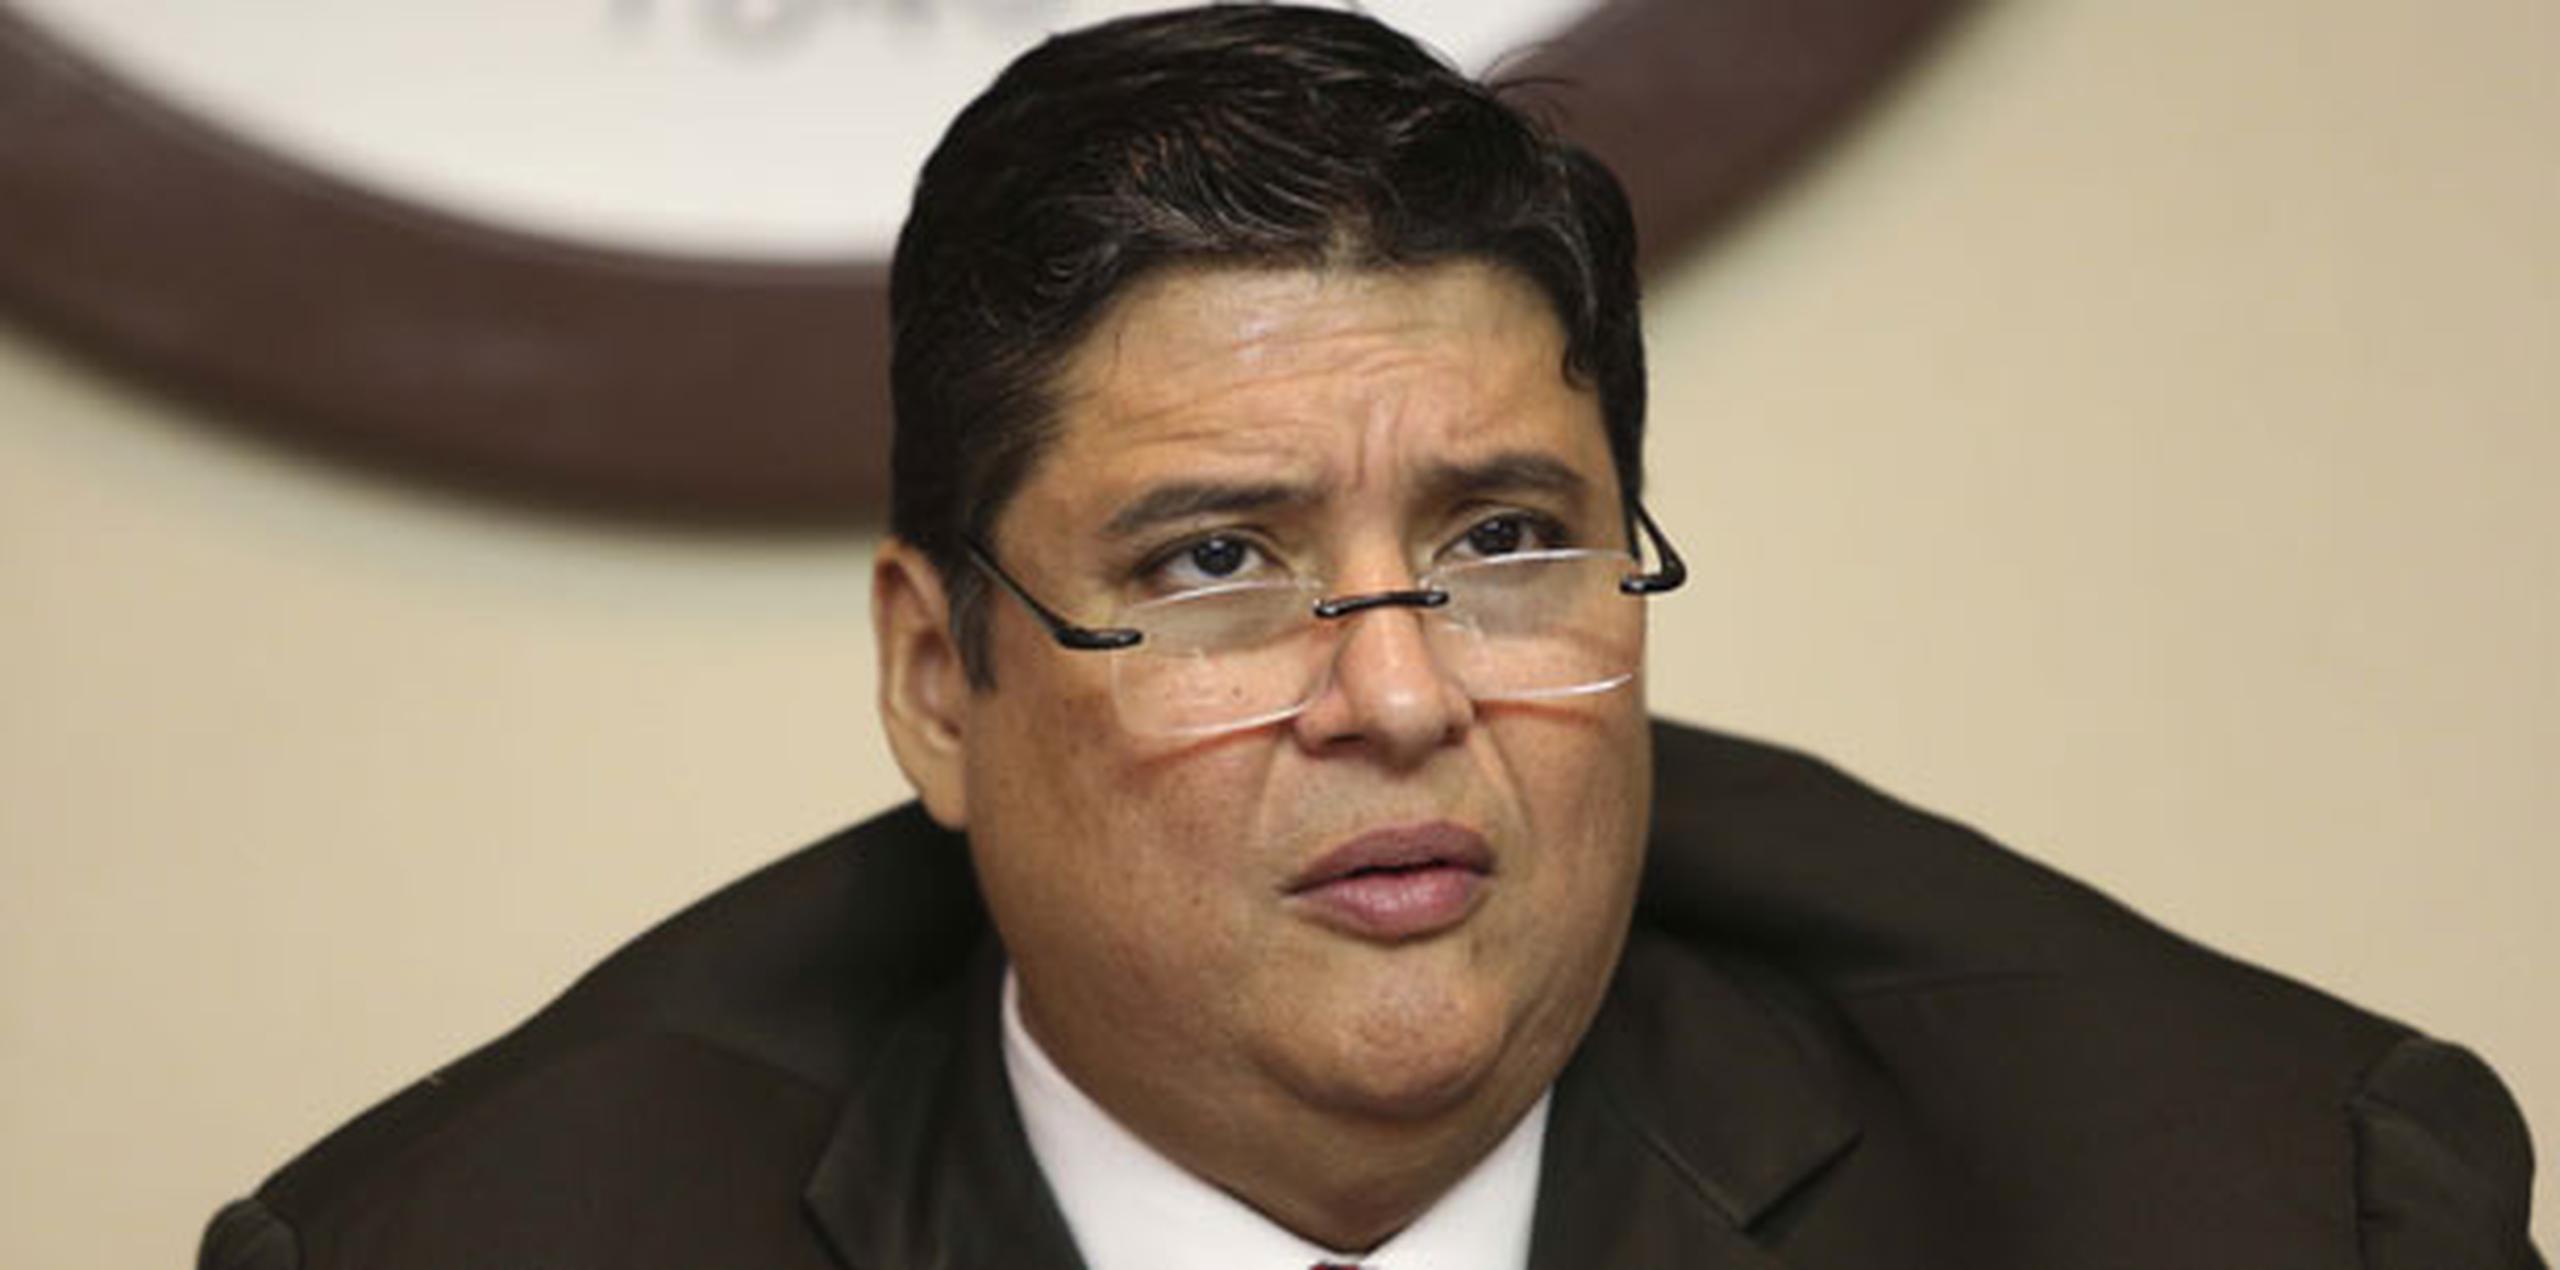 El presidente del Colegio, Mark A. Bimbela, exigió a García Padilla una disculpa pública para los abogados. (Archivo)